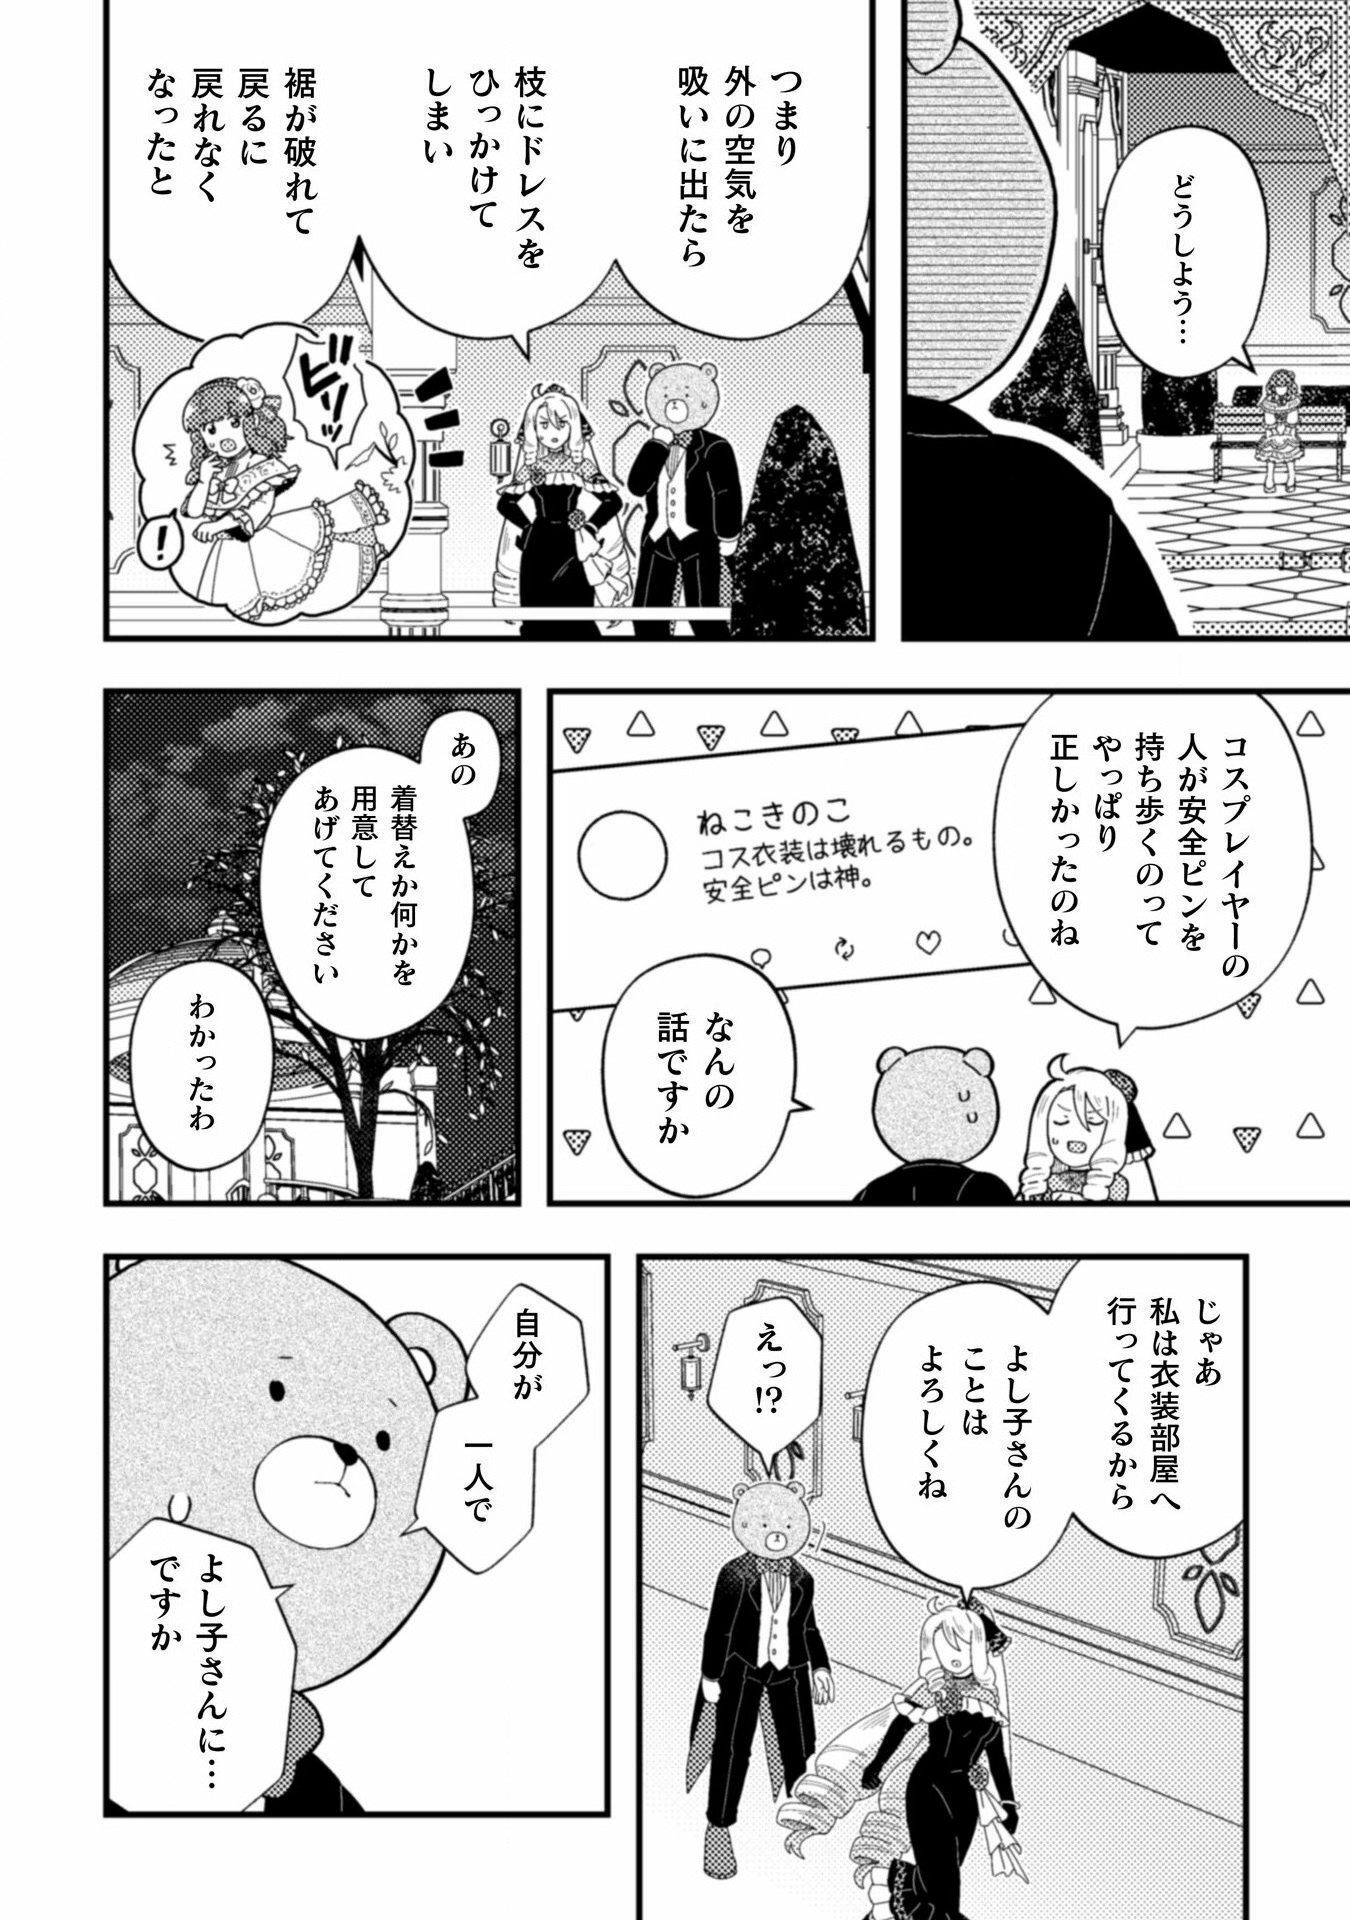 Otome Game no Akuyaku Reijou ni Tensei shitakedo Follower ga Fukyoushiteta Chisiki shikanai - Chapter 19 - Page 20